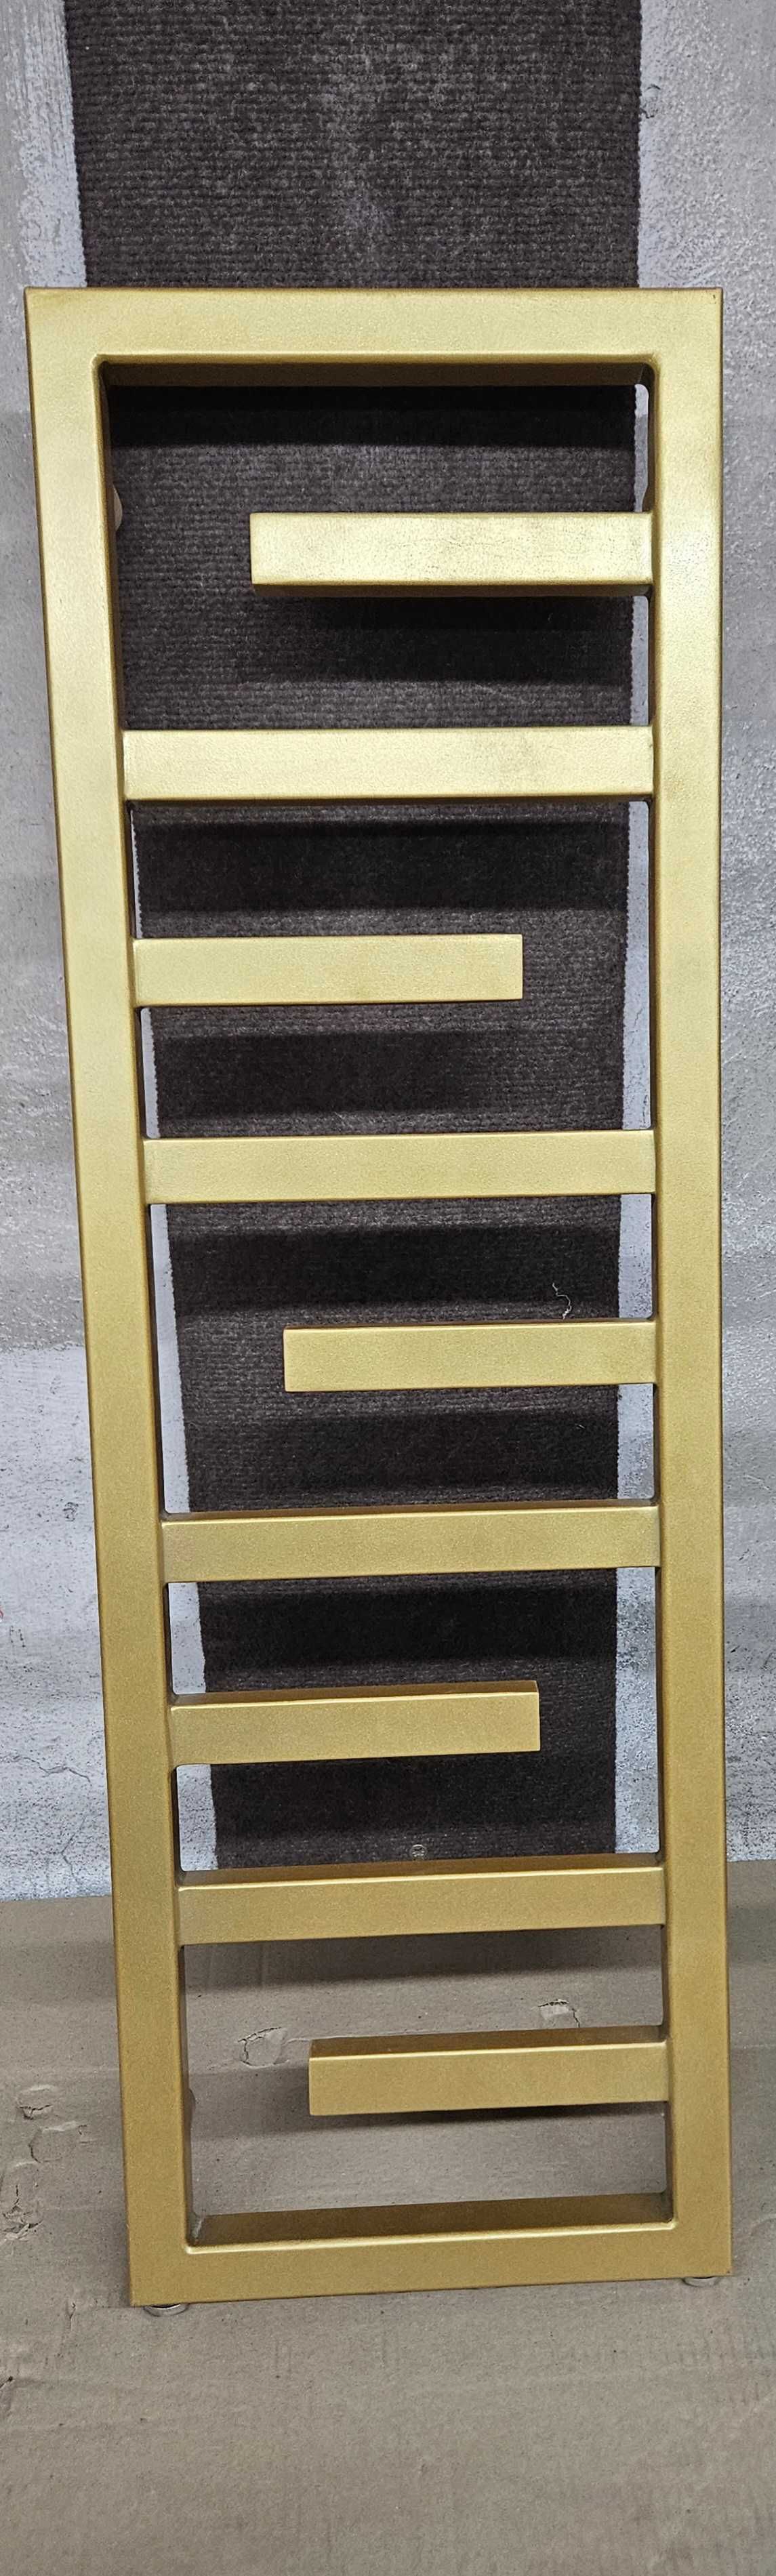 Złoty grzejnik łazienkowy 93x35cm lub 53 cm, elegancki, nowy